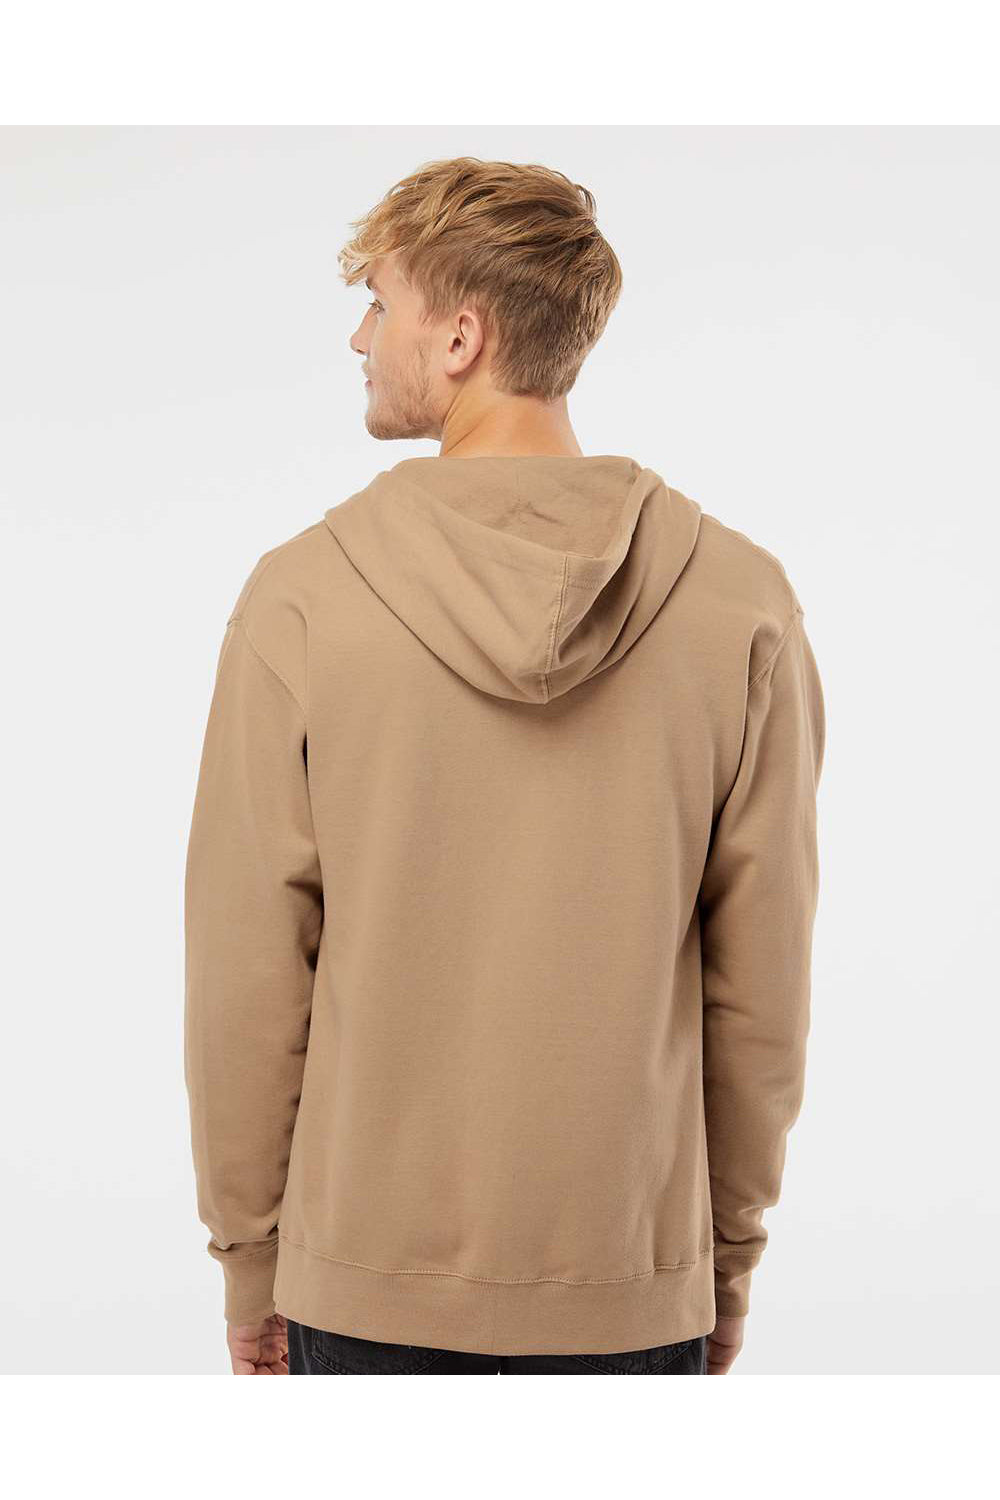 Independent Trading Co. SS4500Z Mens Full Zip Hooded Sweatshirt Hoodie Sandstone Brown Model Back